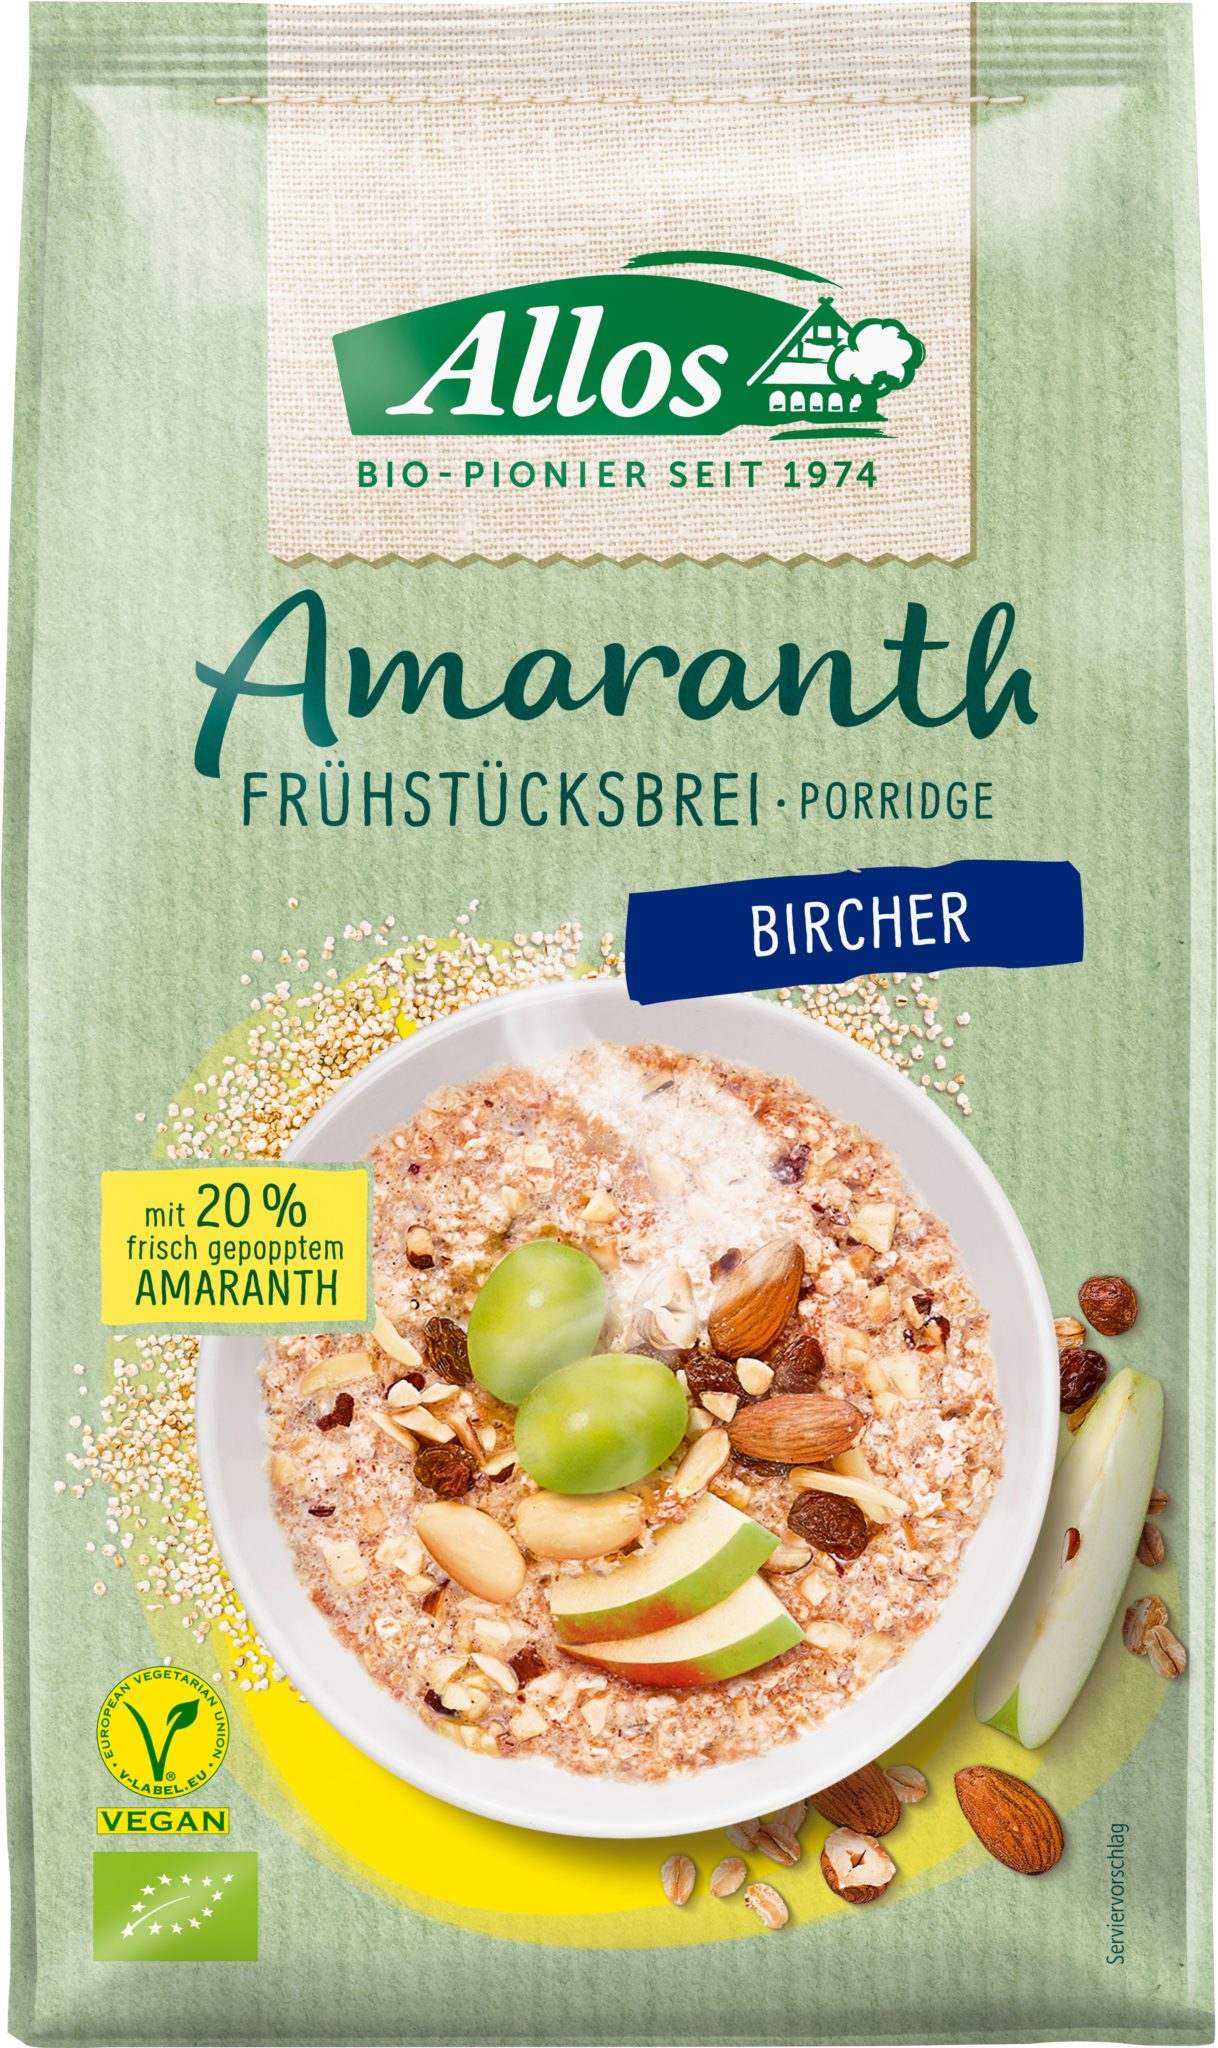 Allos Amaranth Frühstücksbrei Bircher 6 x 400g online kaufen